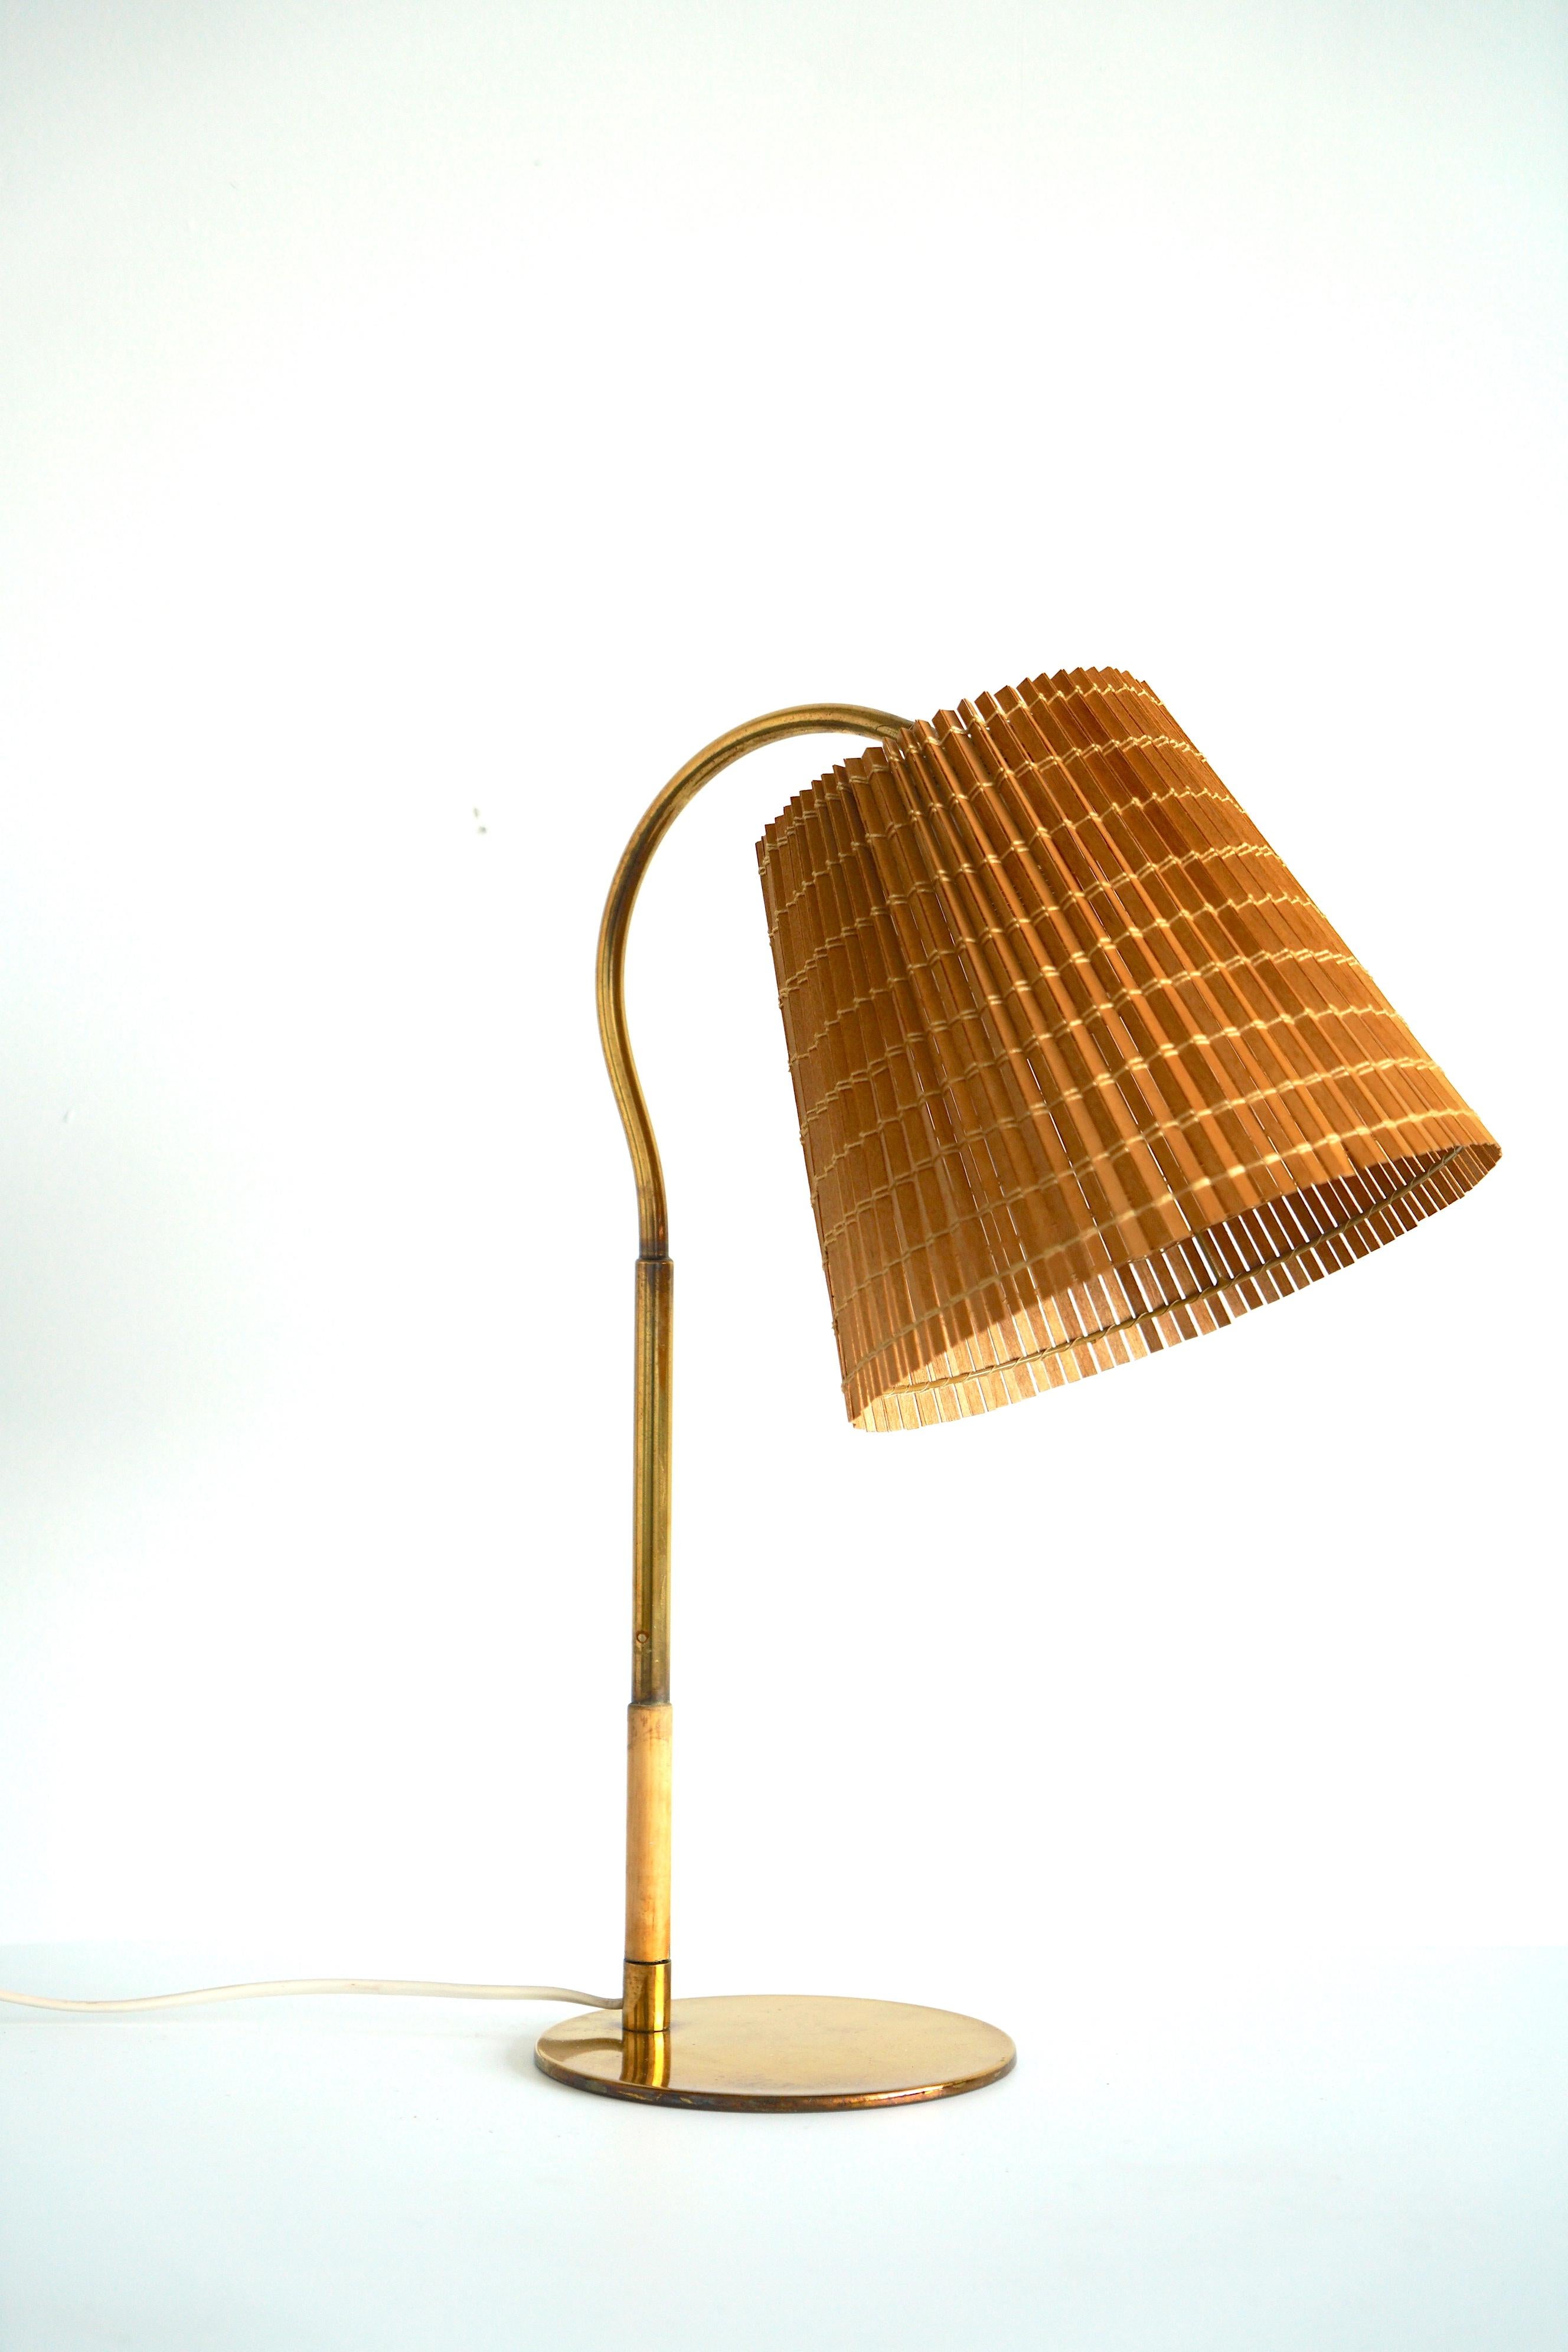 Eine Tischlampe, entworfen von Paavo Tynell, Modell 9201, hergestellt von Taito Oy, um 1940/50. Poliertes Messing, Holz, mit Holzschirm. Auf dem Sockel ist 